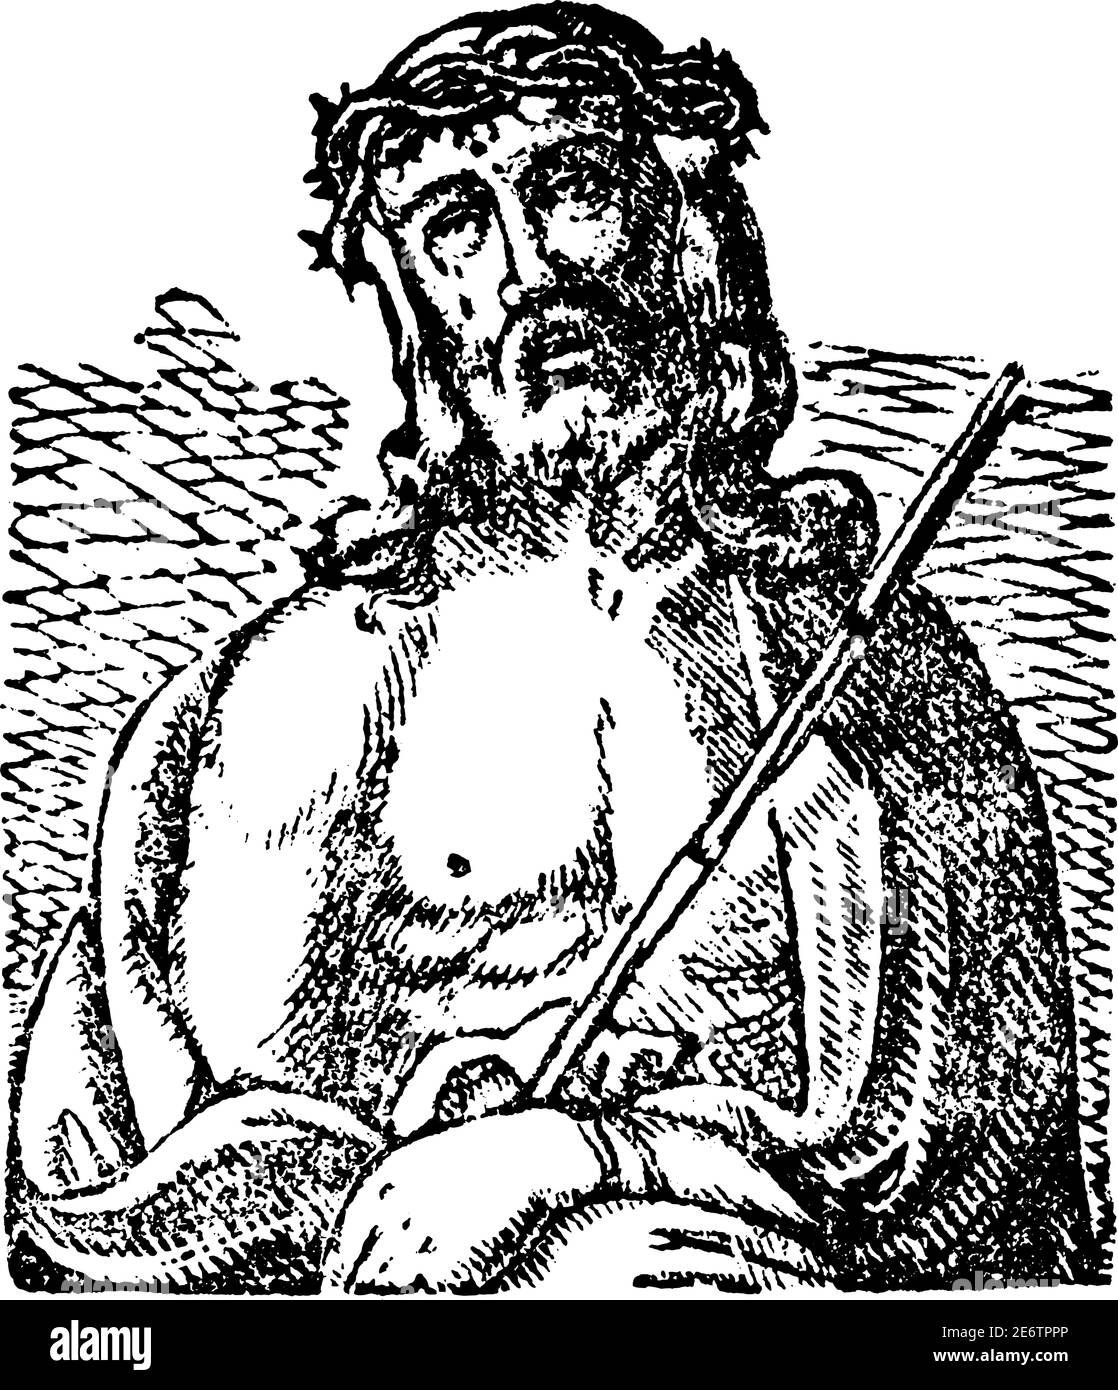 Jesus Christus mit Dornenkrone auf dem Kopf. Antike Vektor vintage christliche religiöse Gravur oder Zeichnung Illustration. Stock Vektor